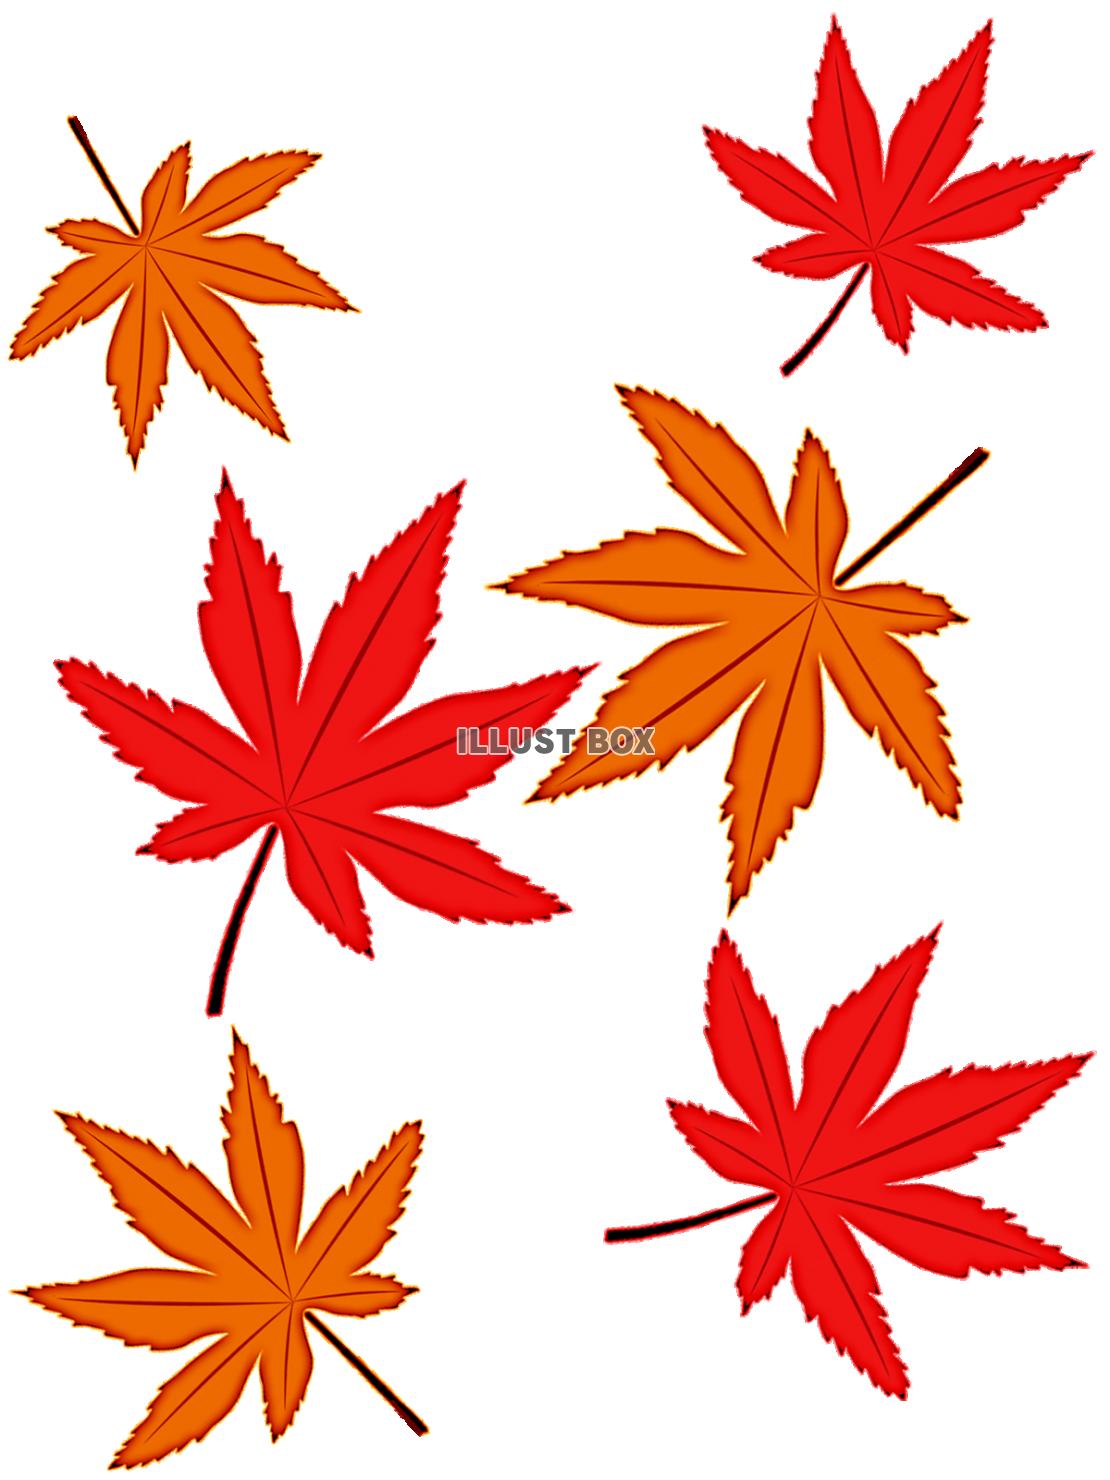 モミジの葉っぱ壁紙シンプル背景素材イラスト。透過png